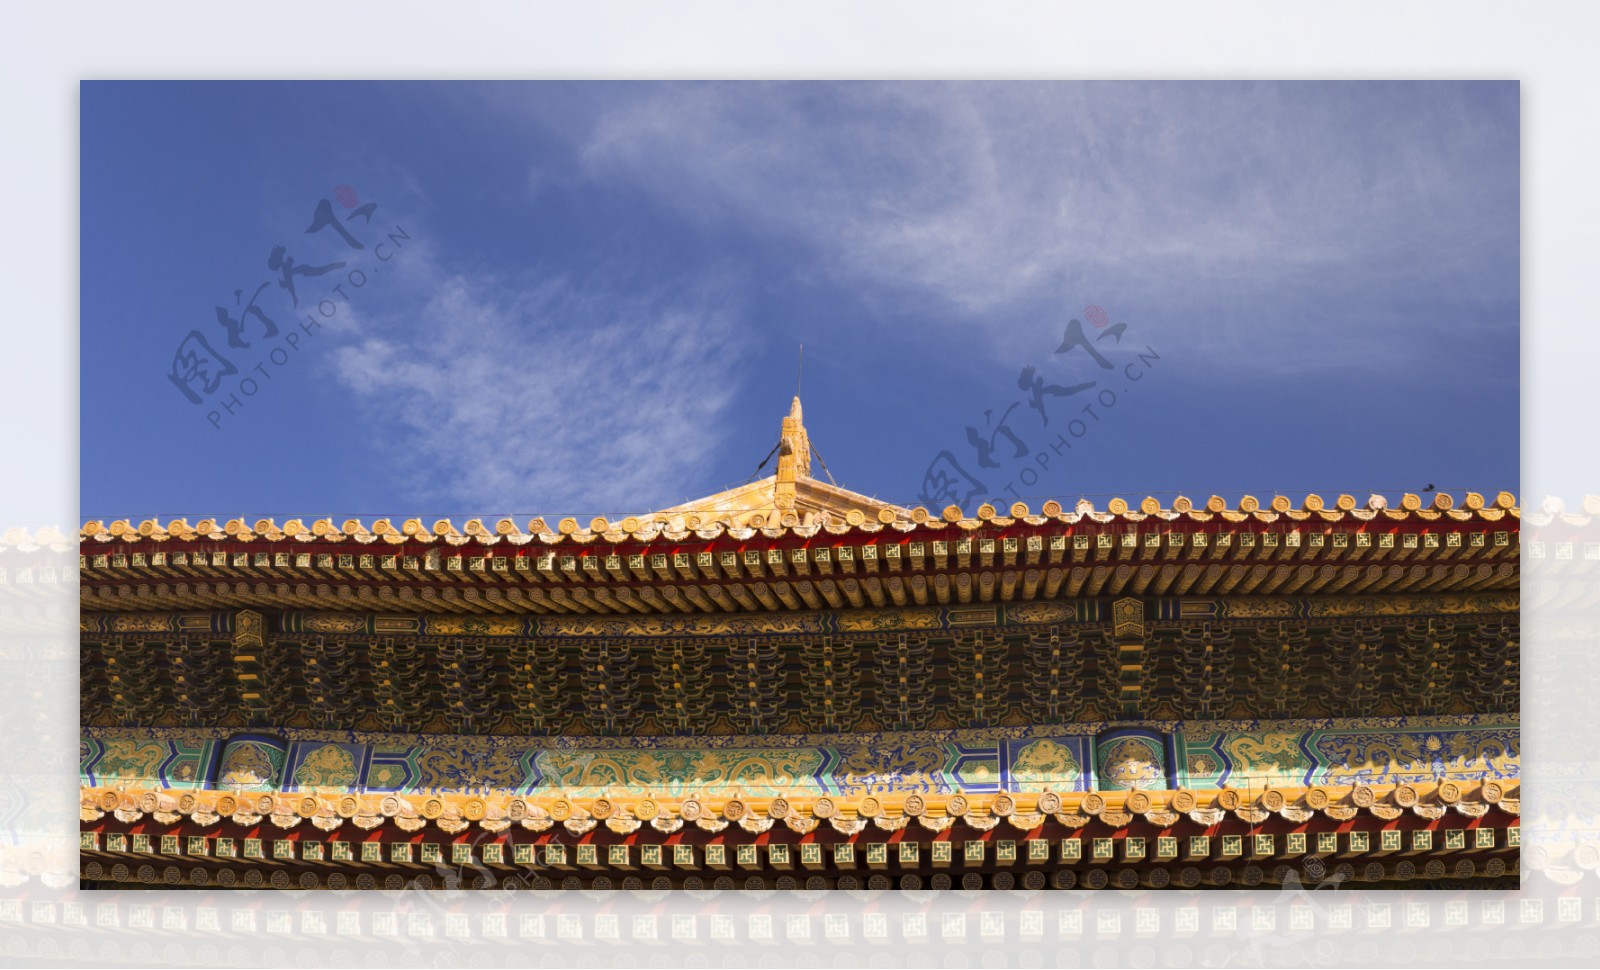 北京天安门故宫紫禁城琉璃瓦屋檐高清风景图